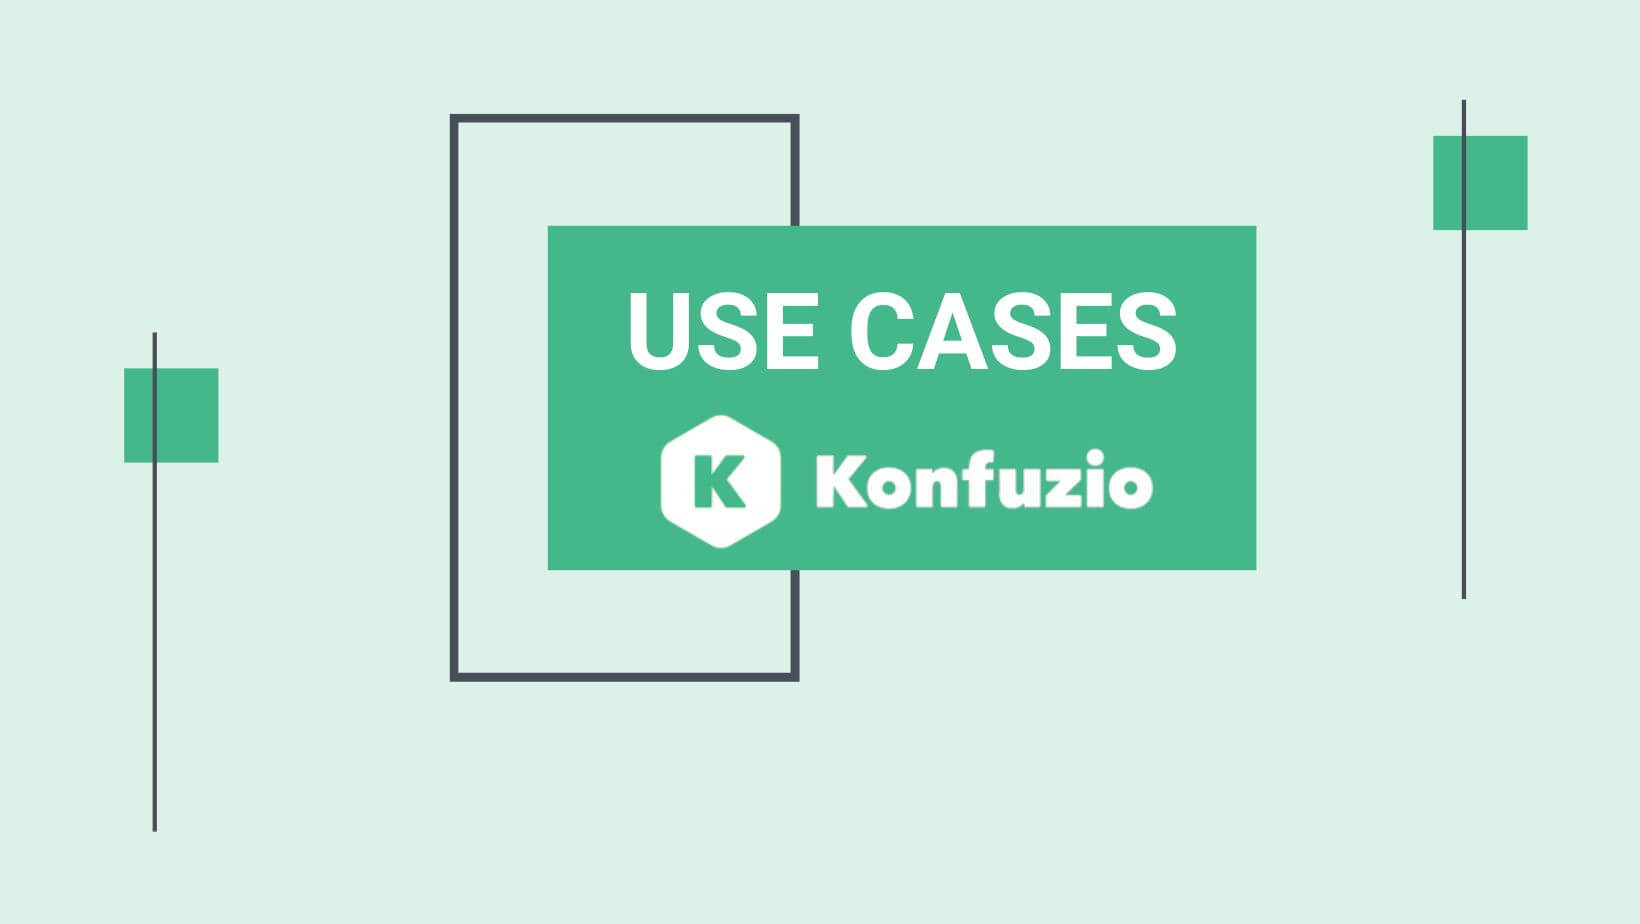 Konfuzio Use Cases Rechnungen digitalisieren